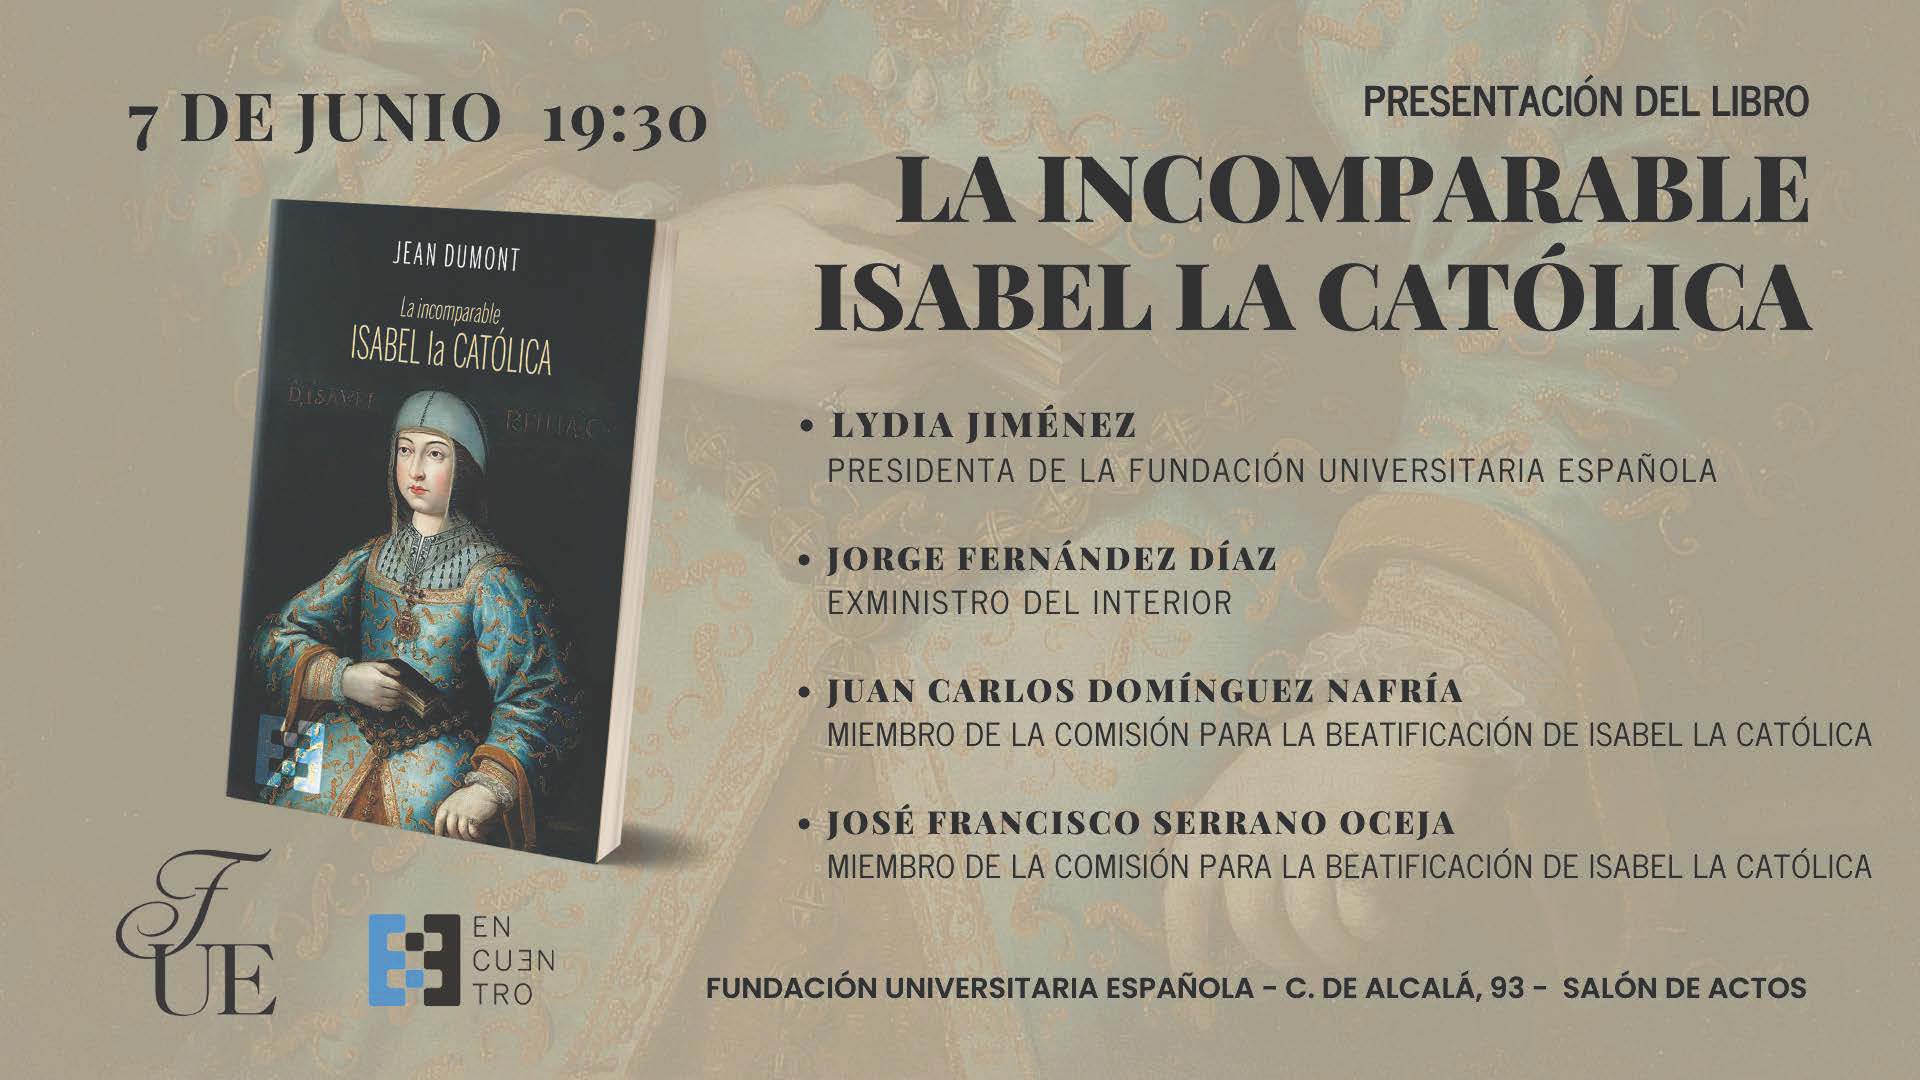 Presentación del libro La incomparable Isabel la Católica, de Jean Dumont